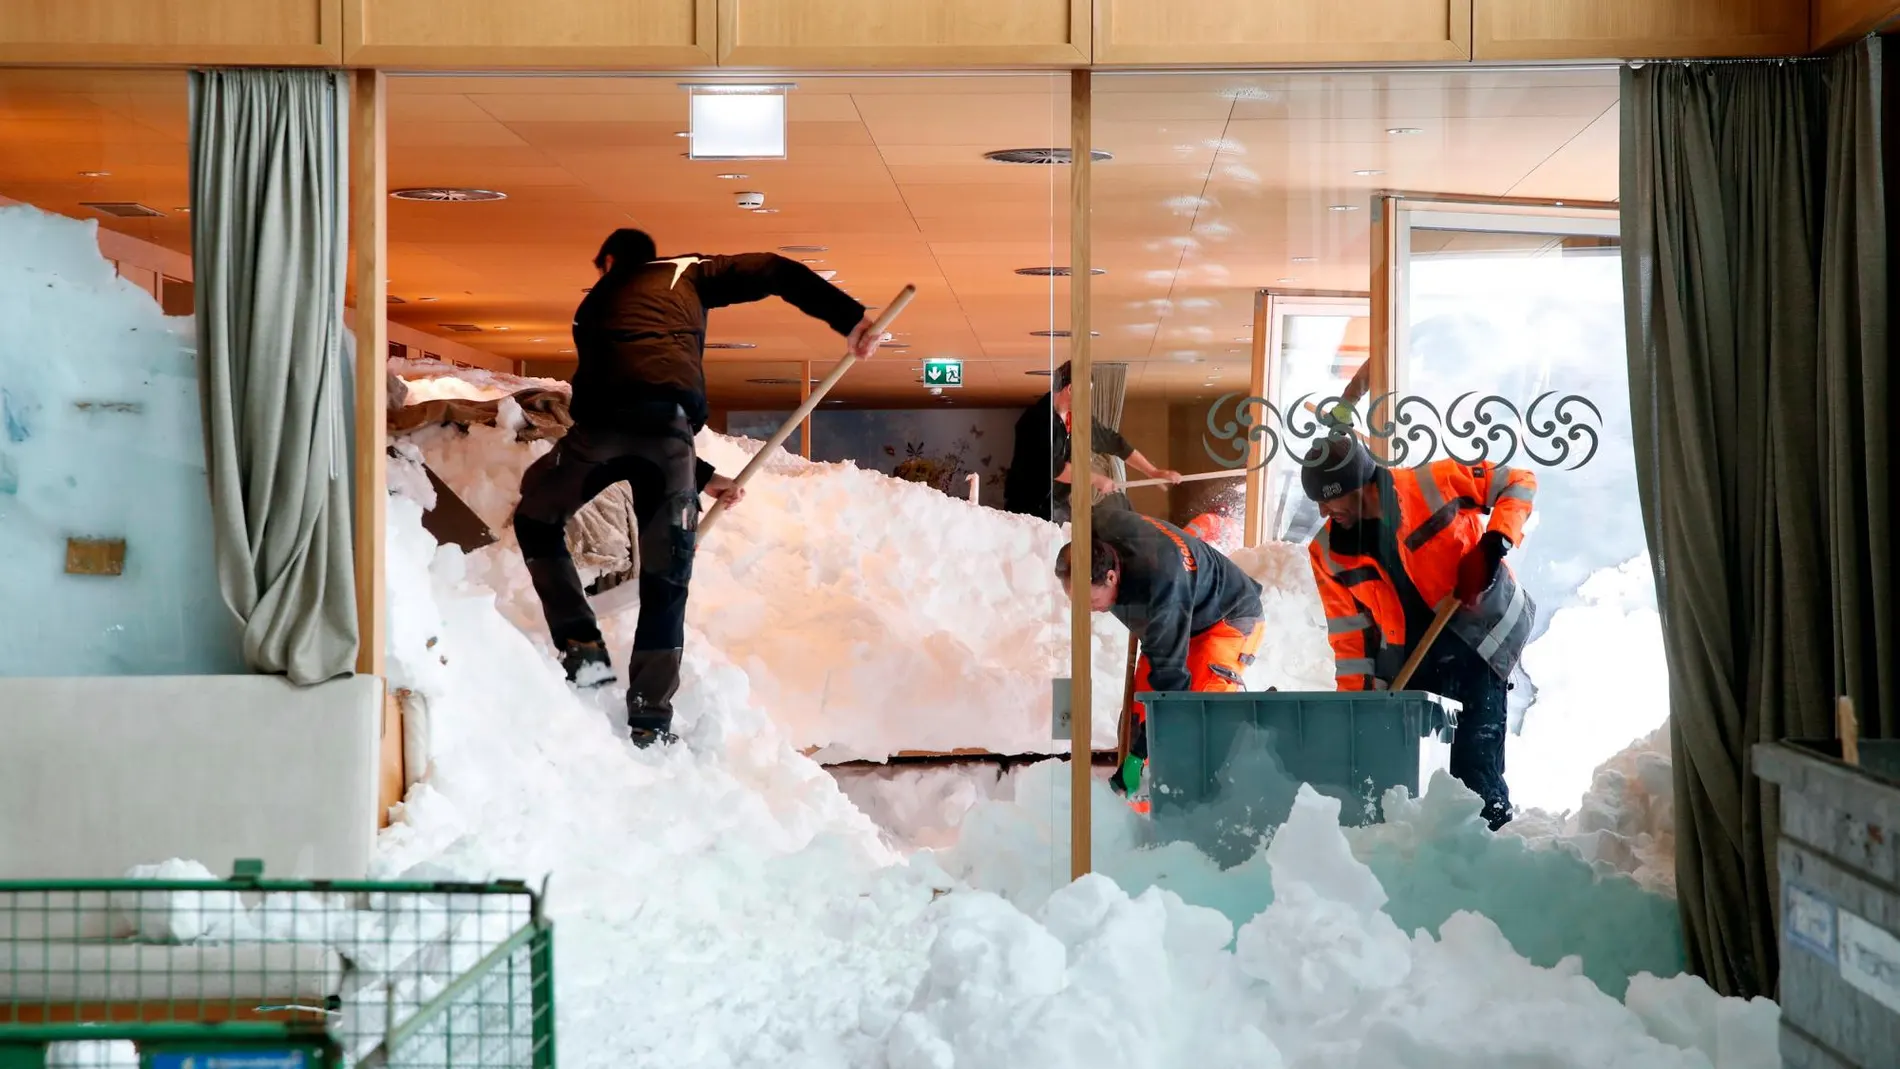 Los servicios de emergencia retiran la nieve de la avalancha en el interior del restaurante/Foto: Reuters